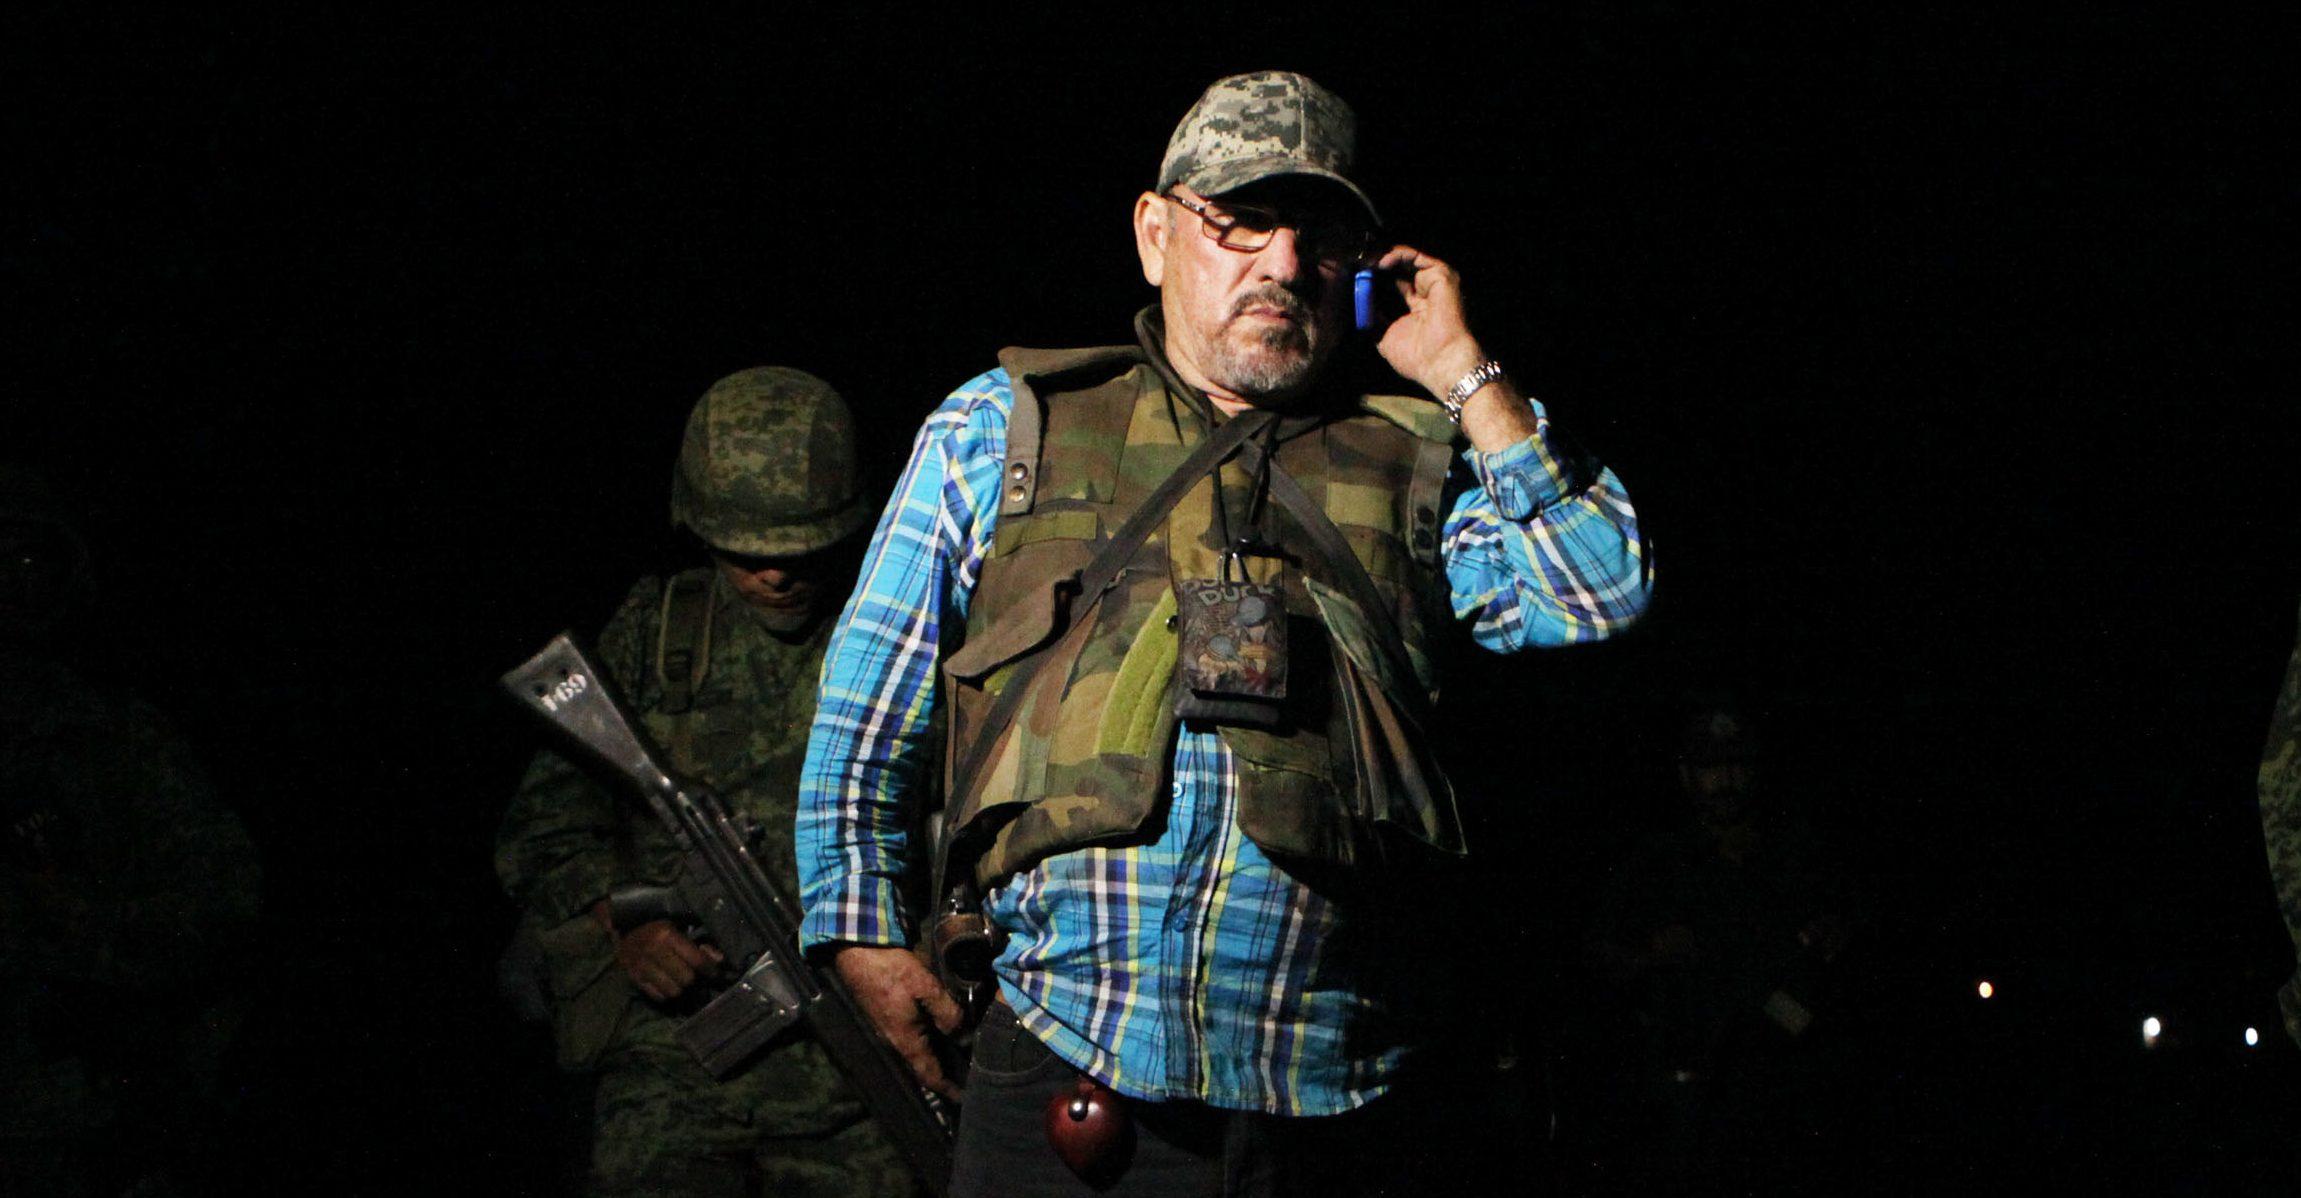 El exlíder de autodefensas Hipólito Mora anuncia que se armará con rifle y pistola ante inseguridad